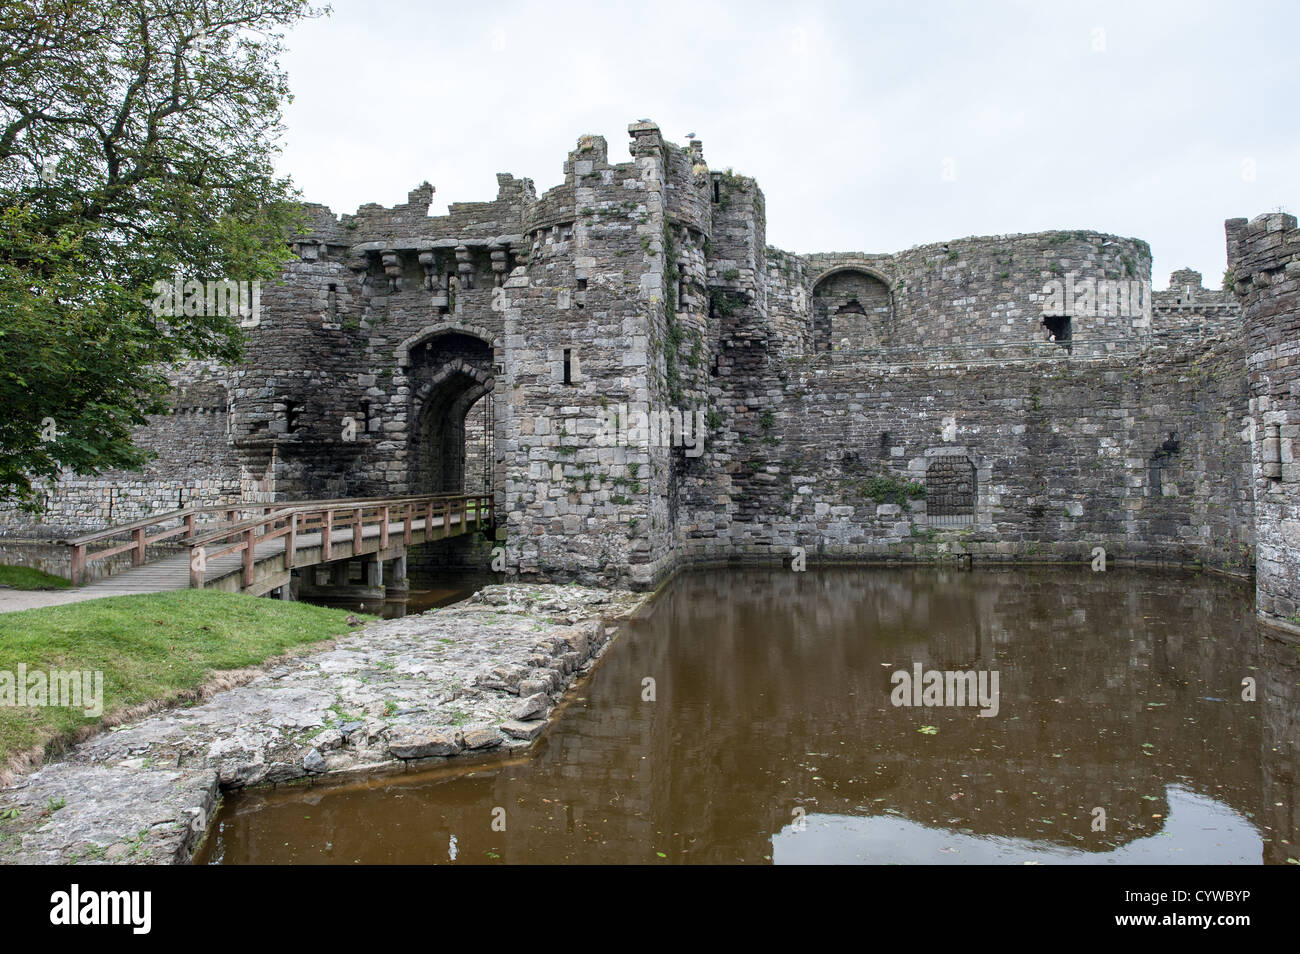 BEAUMARIS, pays de Galles - porte d'entrée du château de Beaumaris sur l'île d'Anglesey, sur la côte nord du pays de Galles, Royaume-Uni. Le château date du 13th siècle et est l'un de plusieurs commandé par Edward I. La pittoresque ville côtière de Beaumaris, située sur l'île d'Anglesey au pays de Galles, offre aux visiteurs un aperçu de la riche histoire de la région, avec son château médiéval, son architecture victorienne et son bord de mer pittoresque. Beaumaris a été classé au patrimoine mondial de l'UNESCO et continue à charmer les voyageurs avec ses monuments bien conservés et sa beauté naturelle étonnante. Banque D'Images